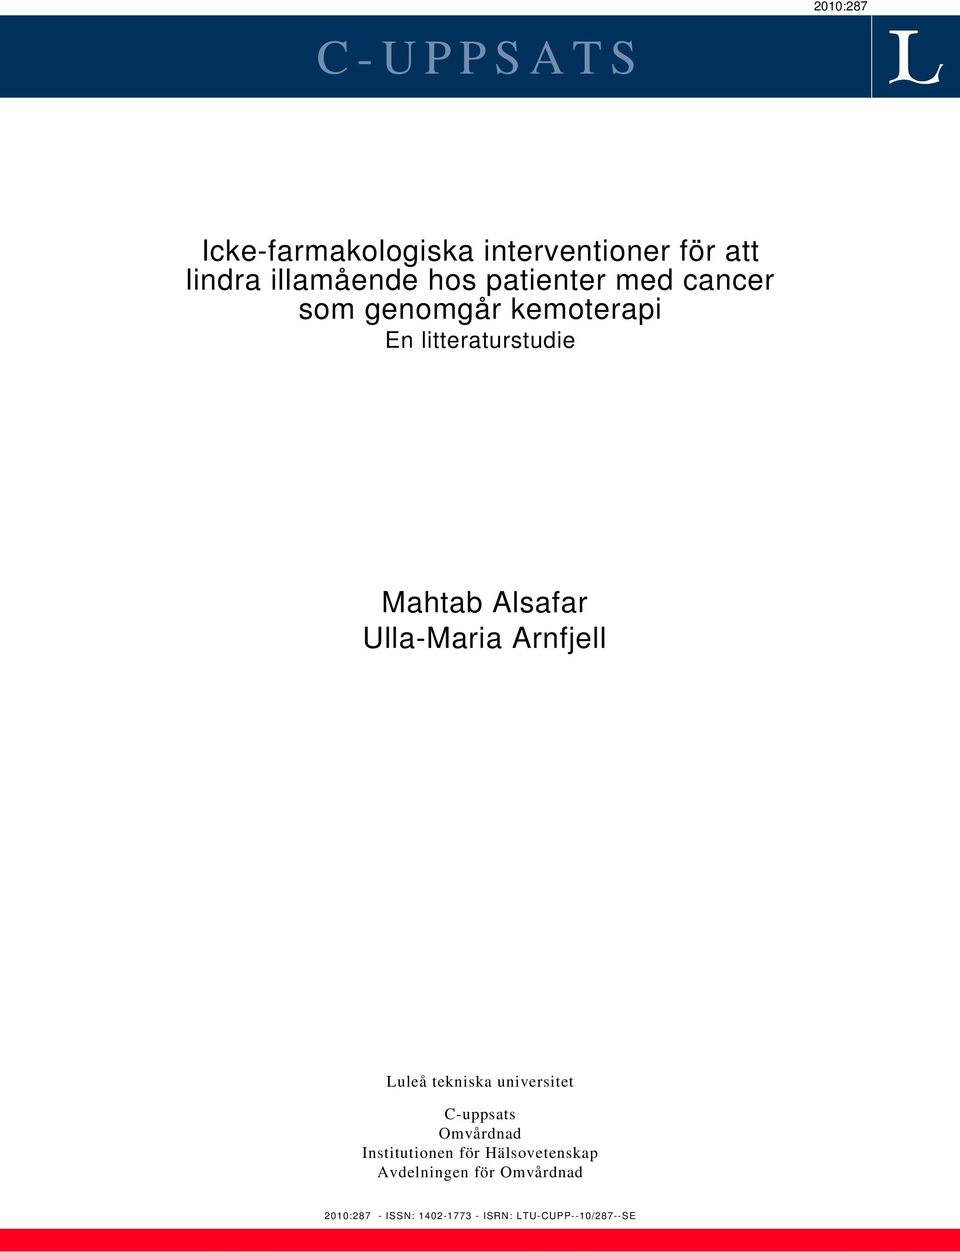 Ulla-Maria Arnfjell Luleå tekniska universitet C-uppsats Omvårdnad Institutionen för